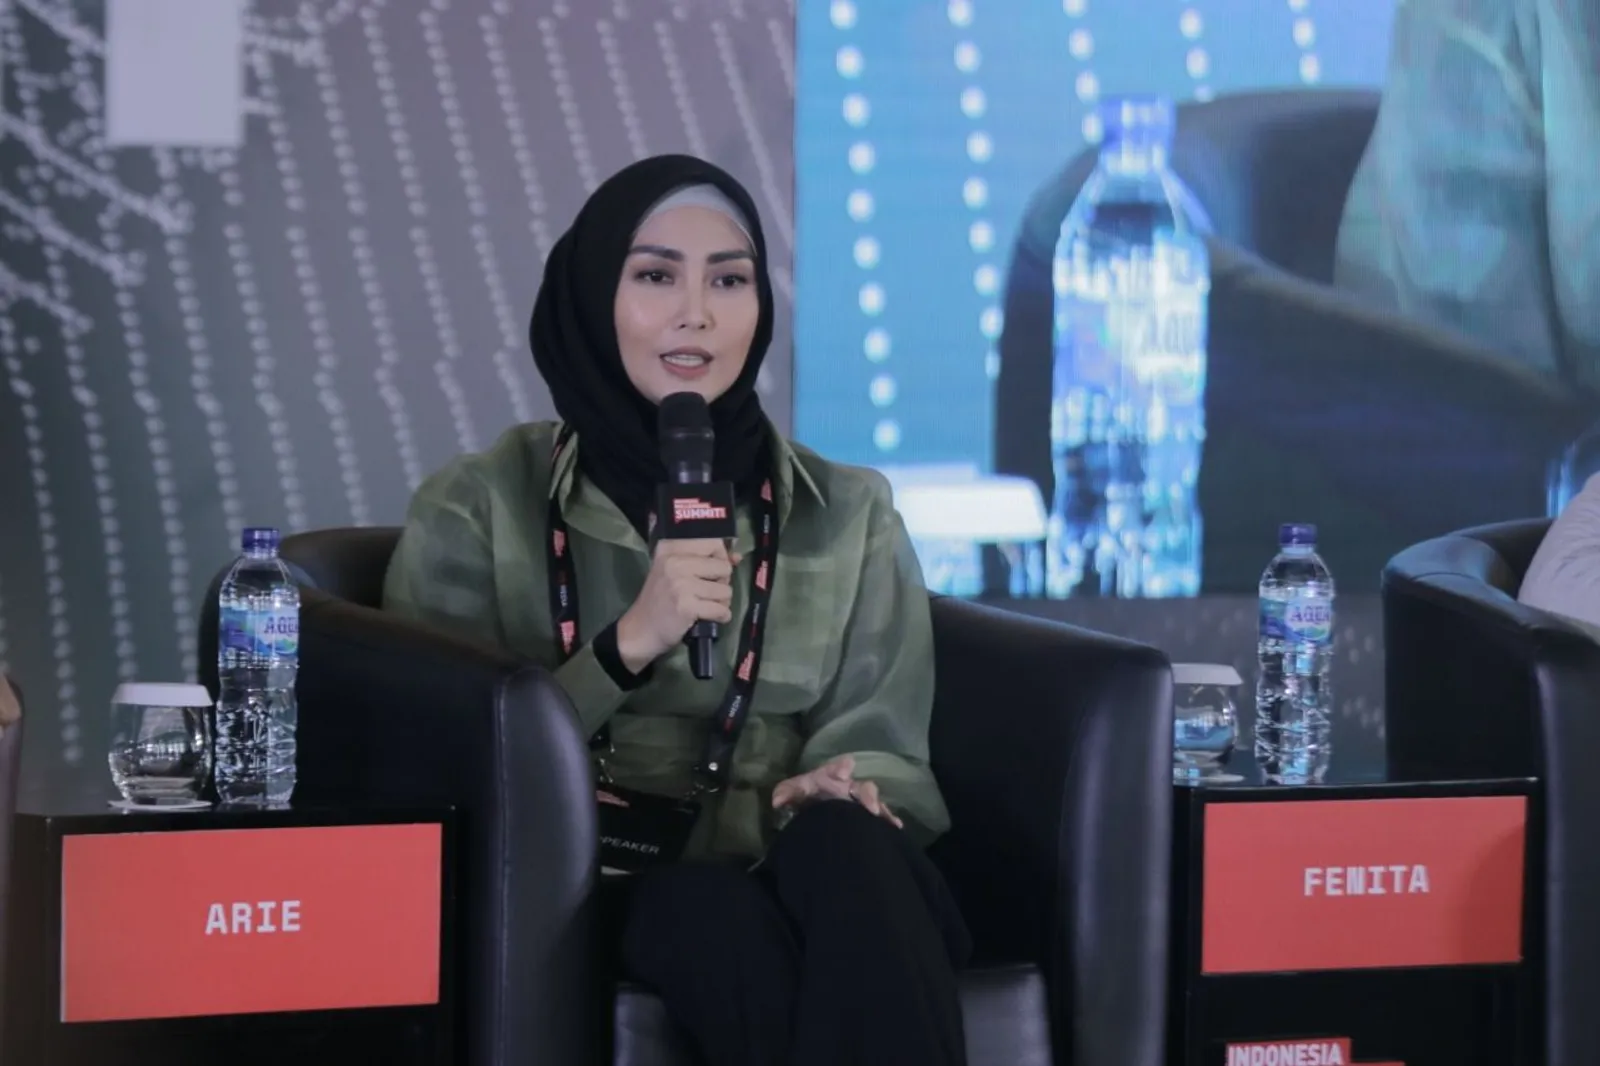 #IMS2020: Hijab Bukan Jadi Penghalang Karier Bagi Fenita Arie 